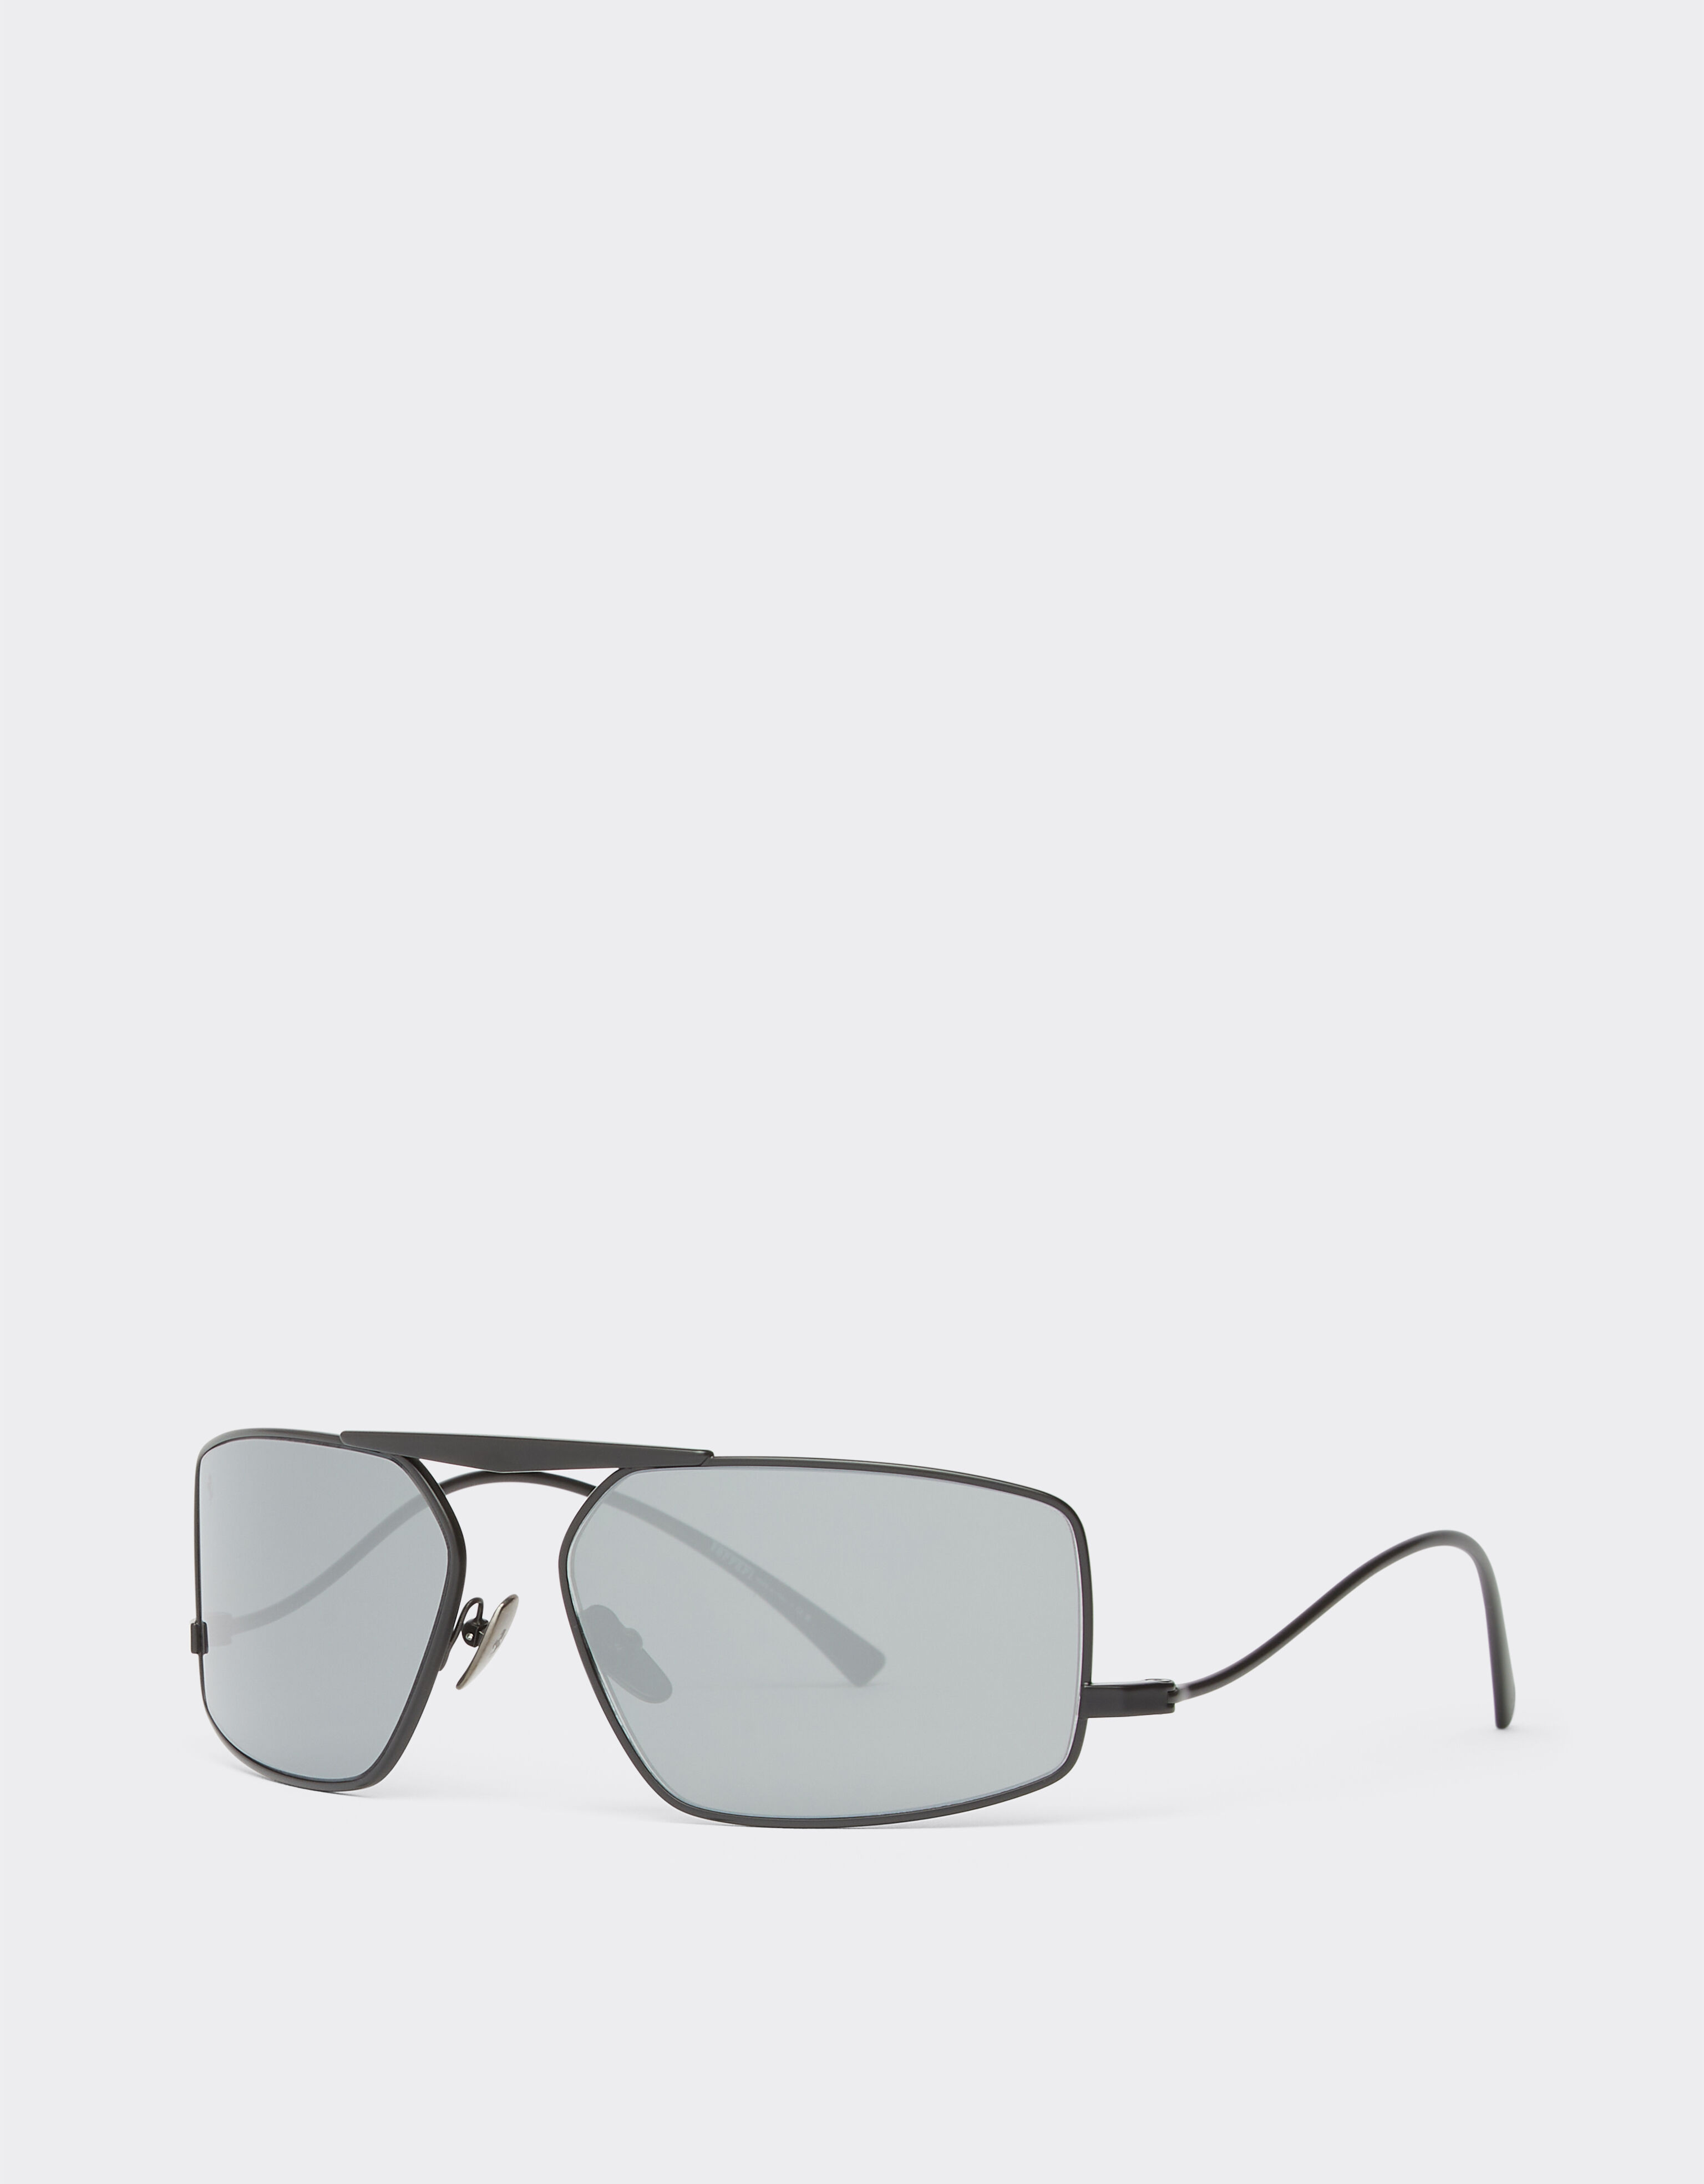 Ferrari Ferrari Sonnenbrille aus schwarzem Metall mit silberfarben verspiegelten Gläsern Mattschwarz F1210f